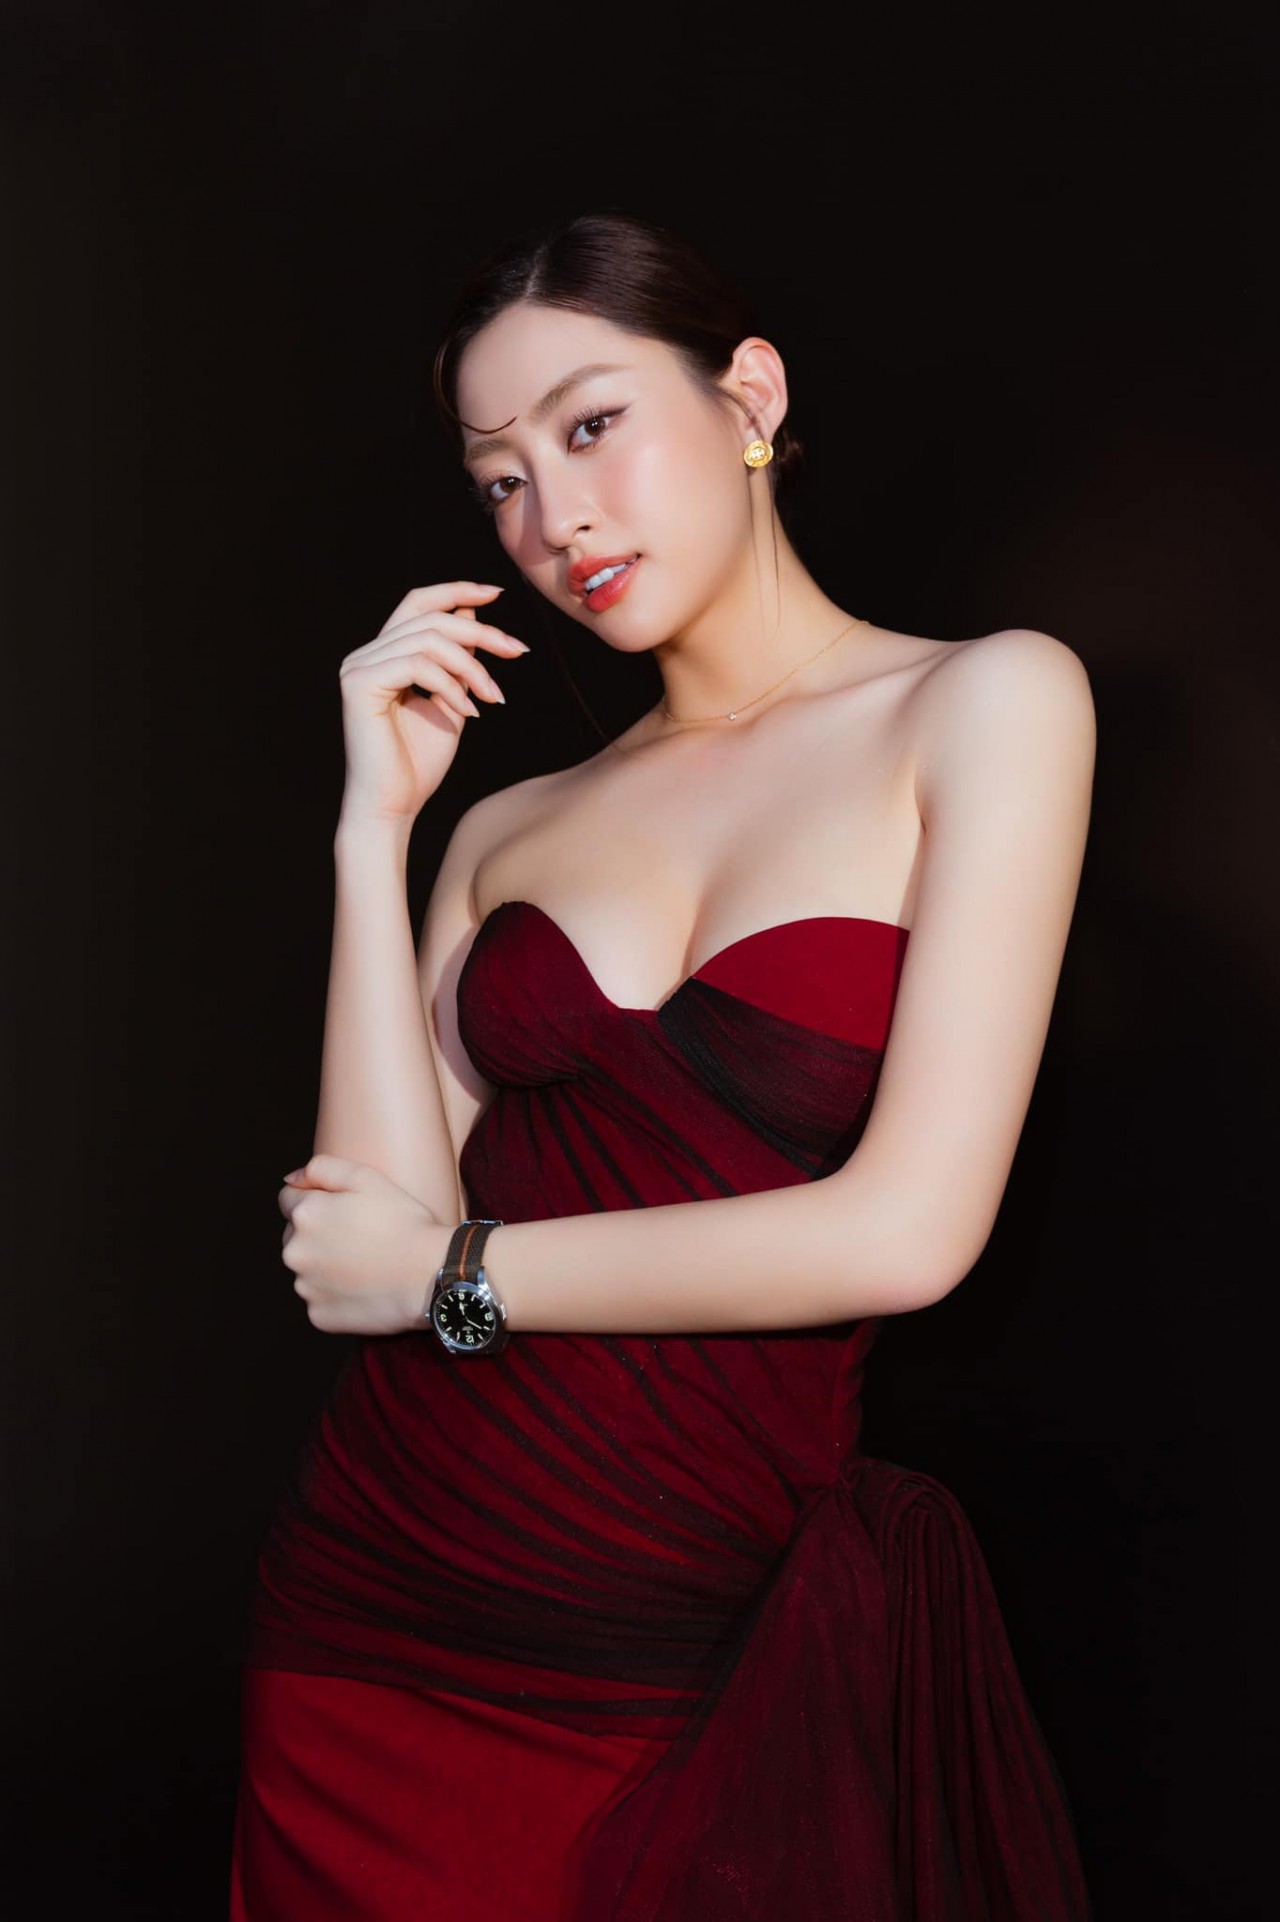 Hoa hậu Lương Thùy Linh